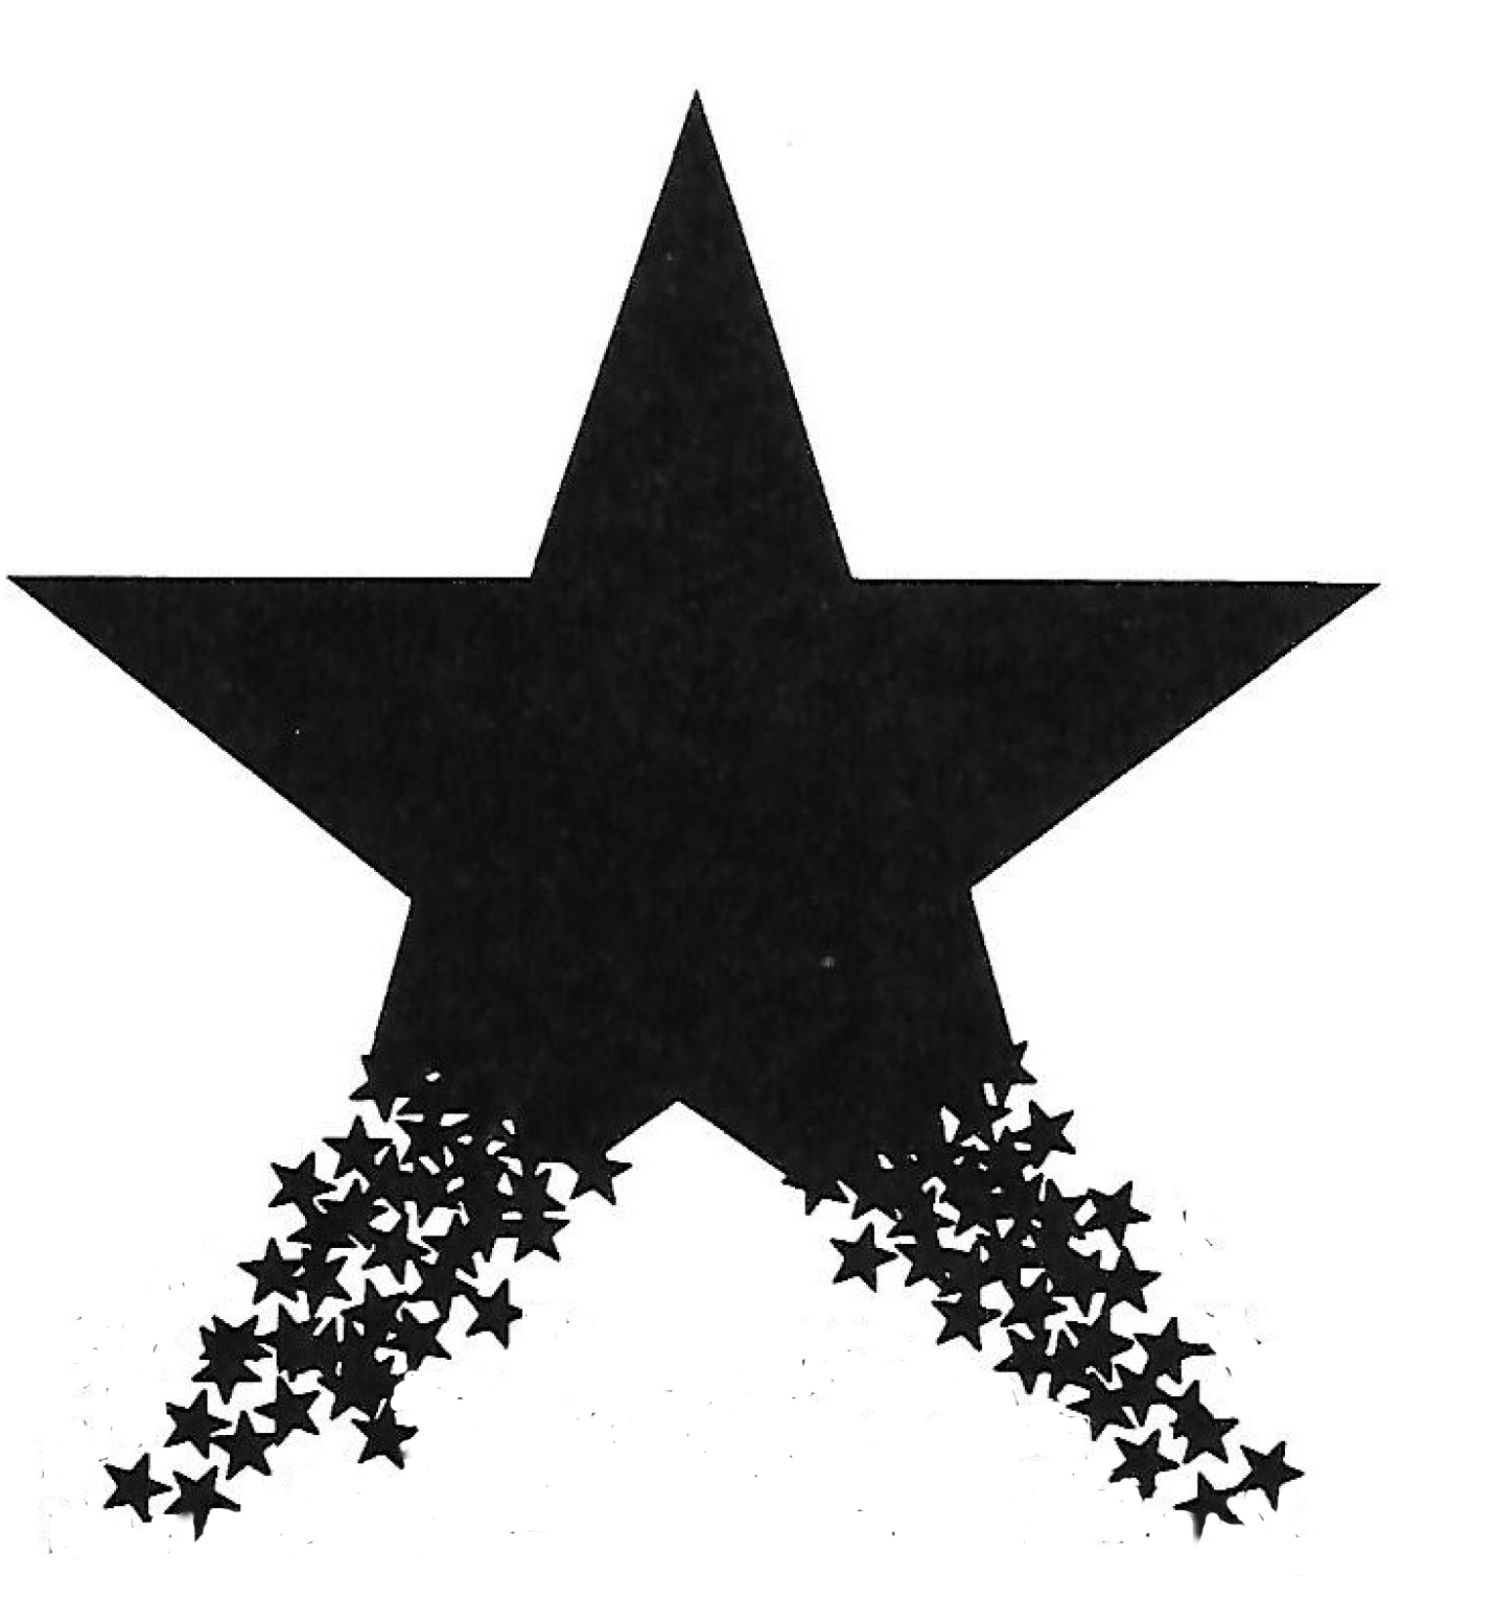 Monroe Publishing - THE STAR